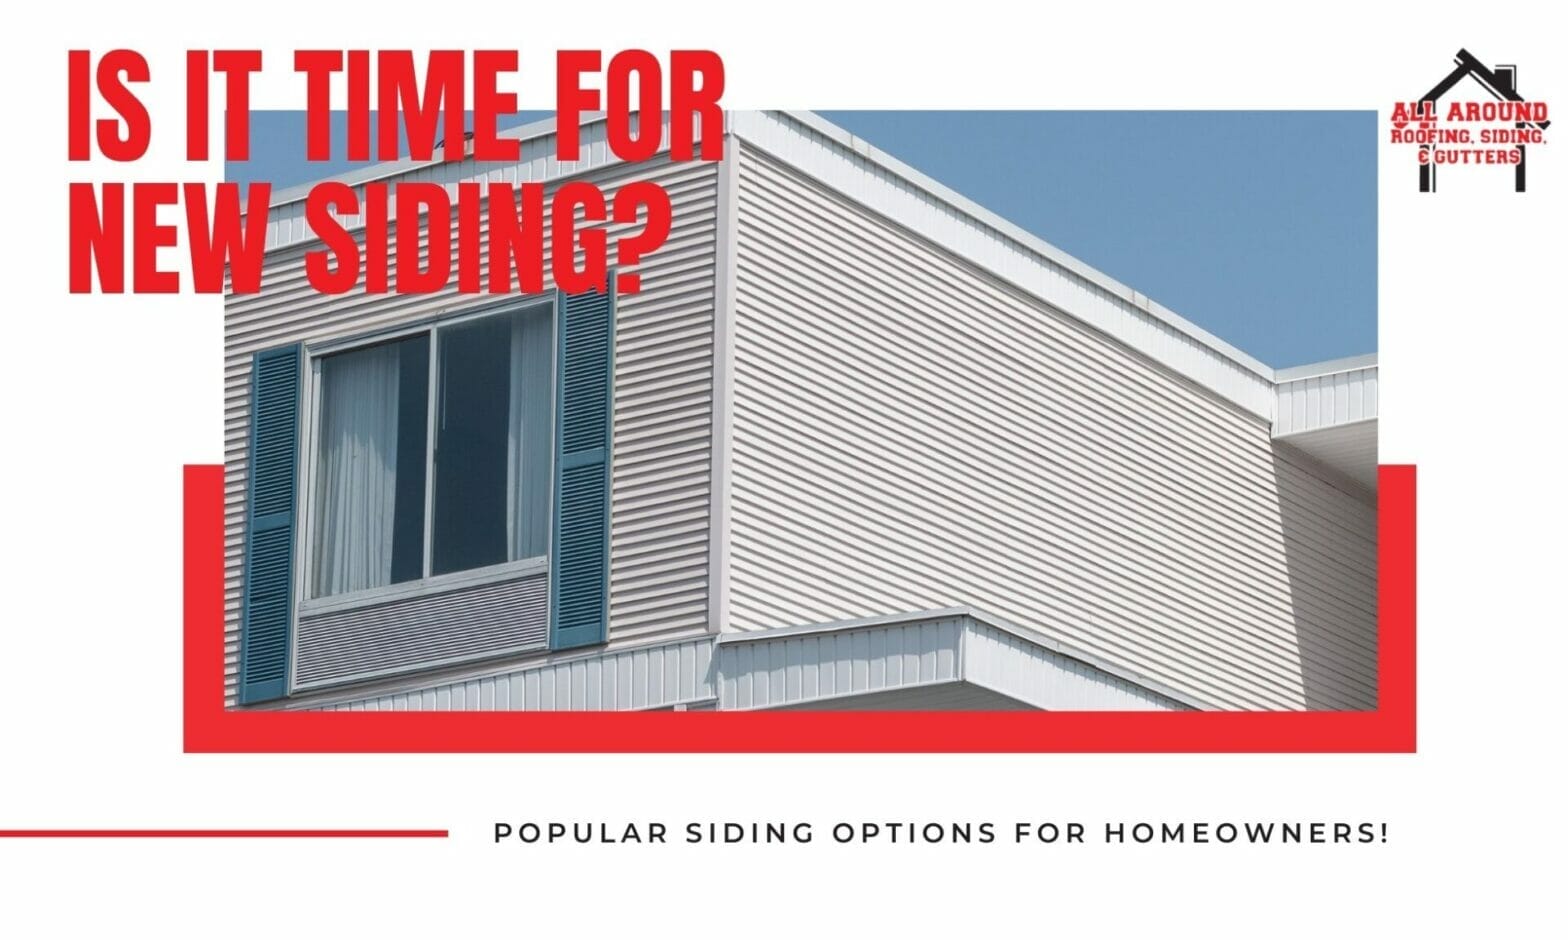 Siding Contractors Discusses Top Six Siding Options